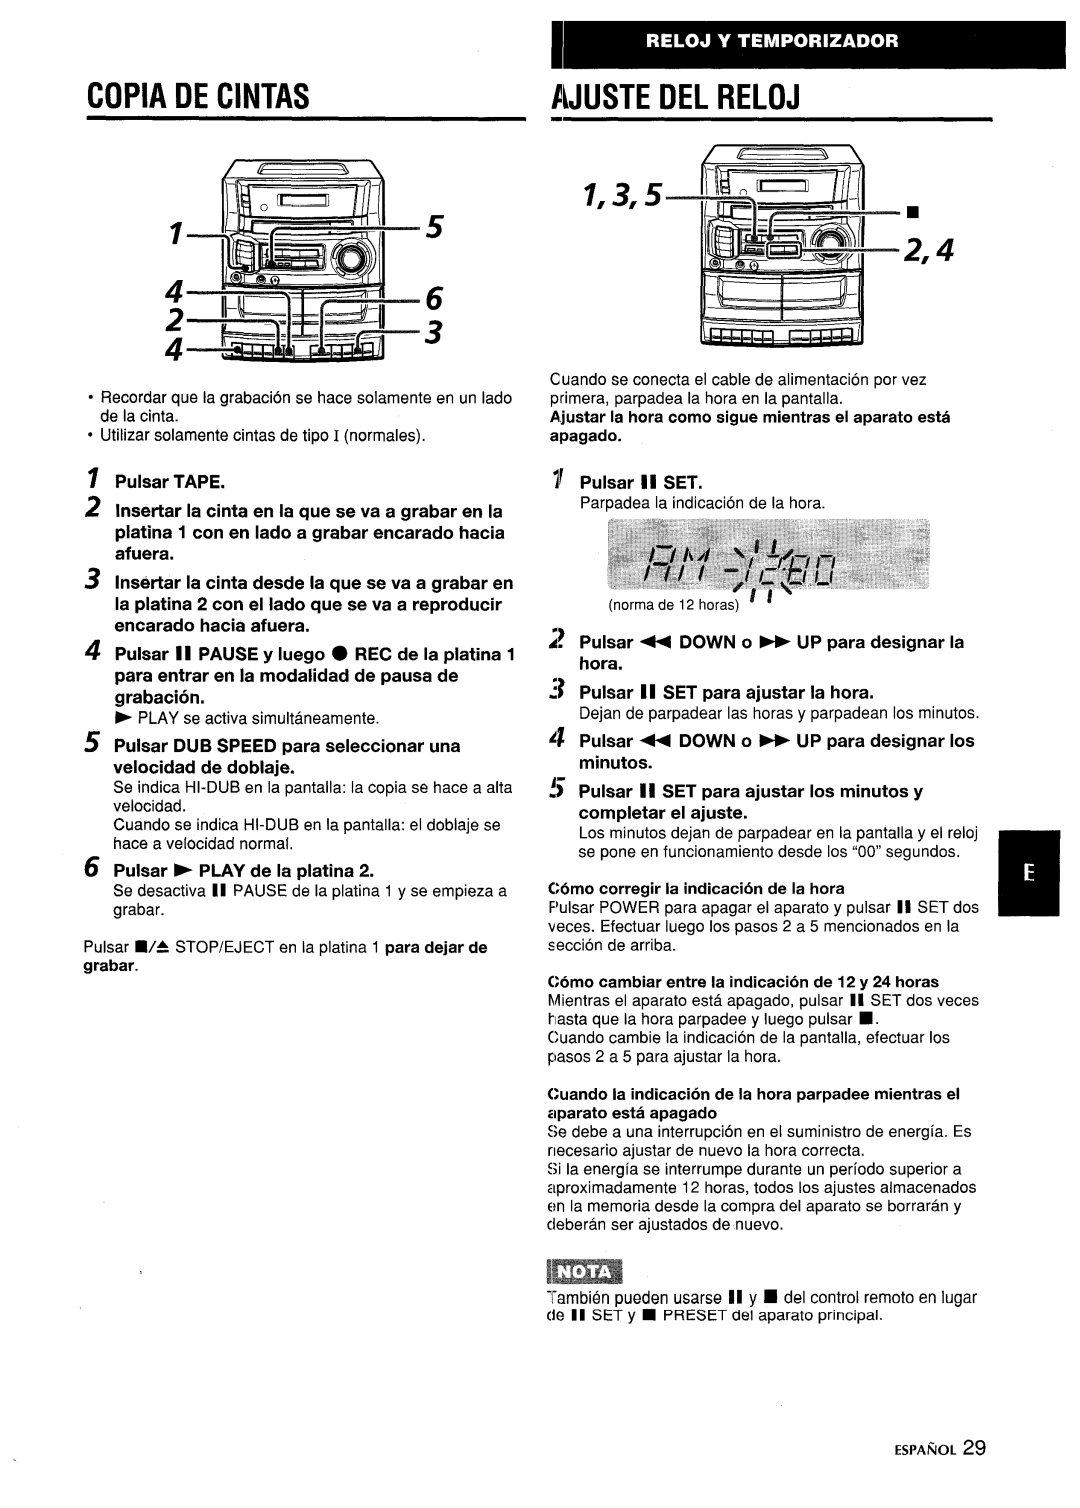 Aiwa CA-DW635 manual Copia De Cintas, 1,3,5, Pulsar TAPE 2 Insertar la cinta en la que se va a grabar en la, Pulsar II SET 